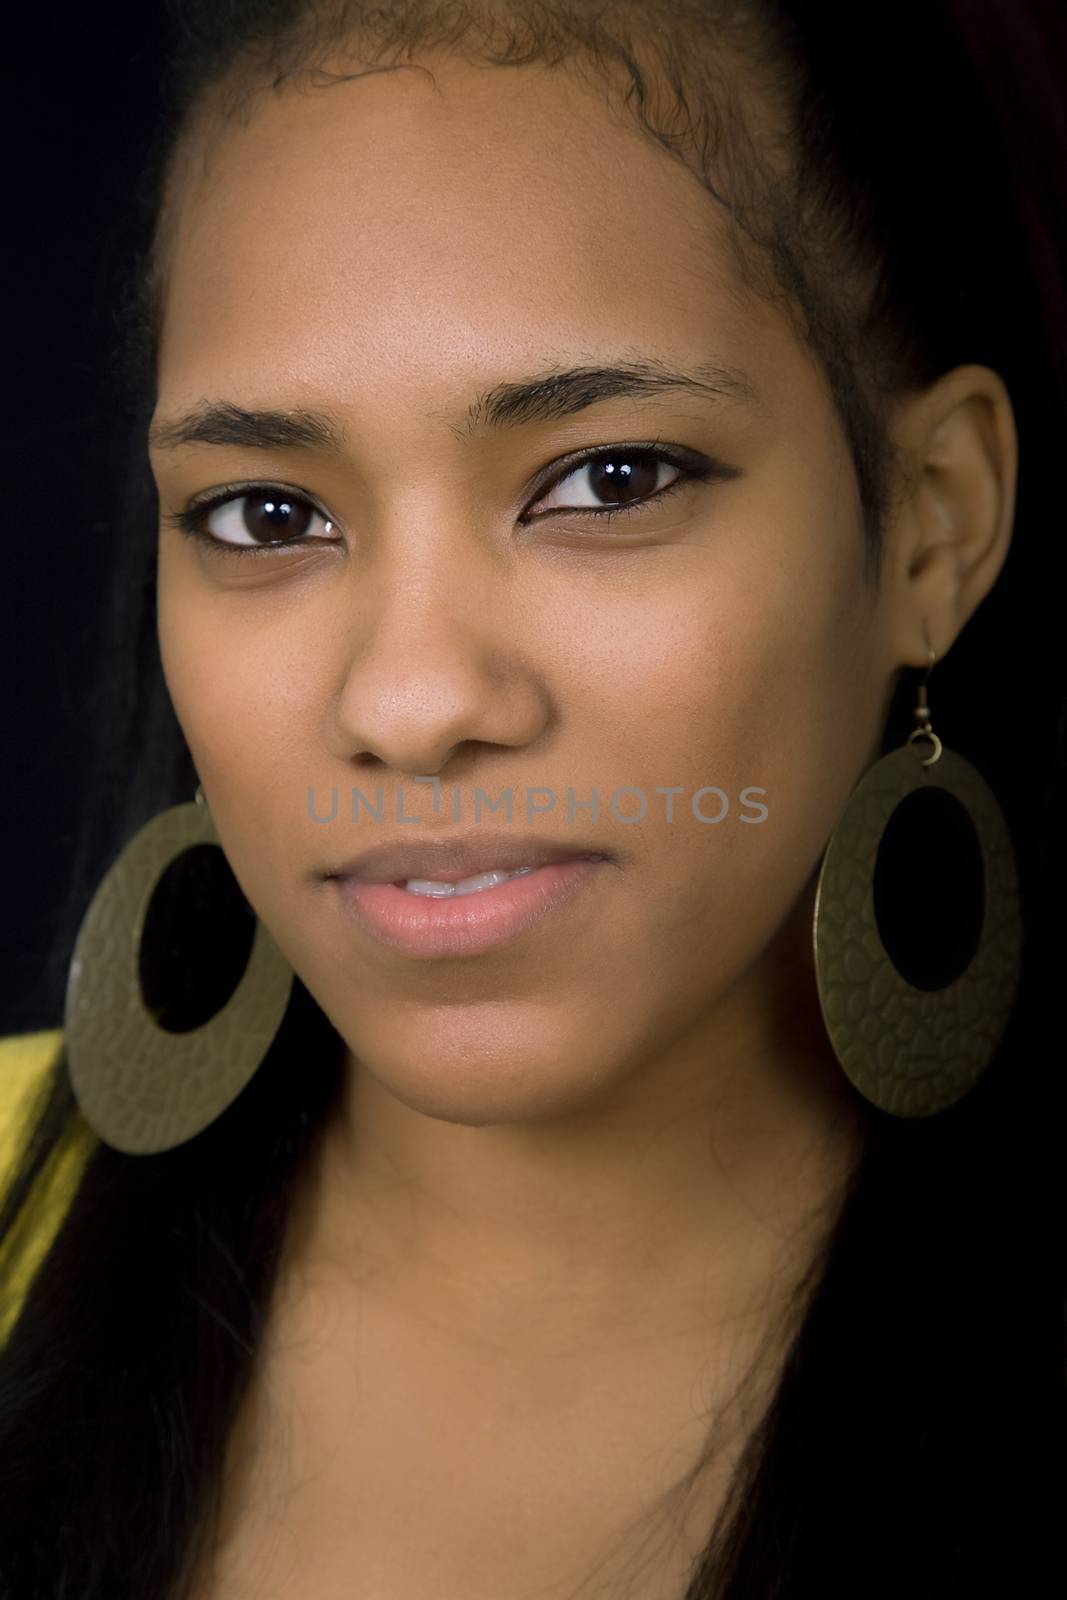 young beautiful woman closeup portrait, studio shot